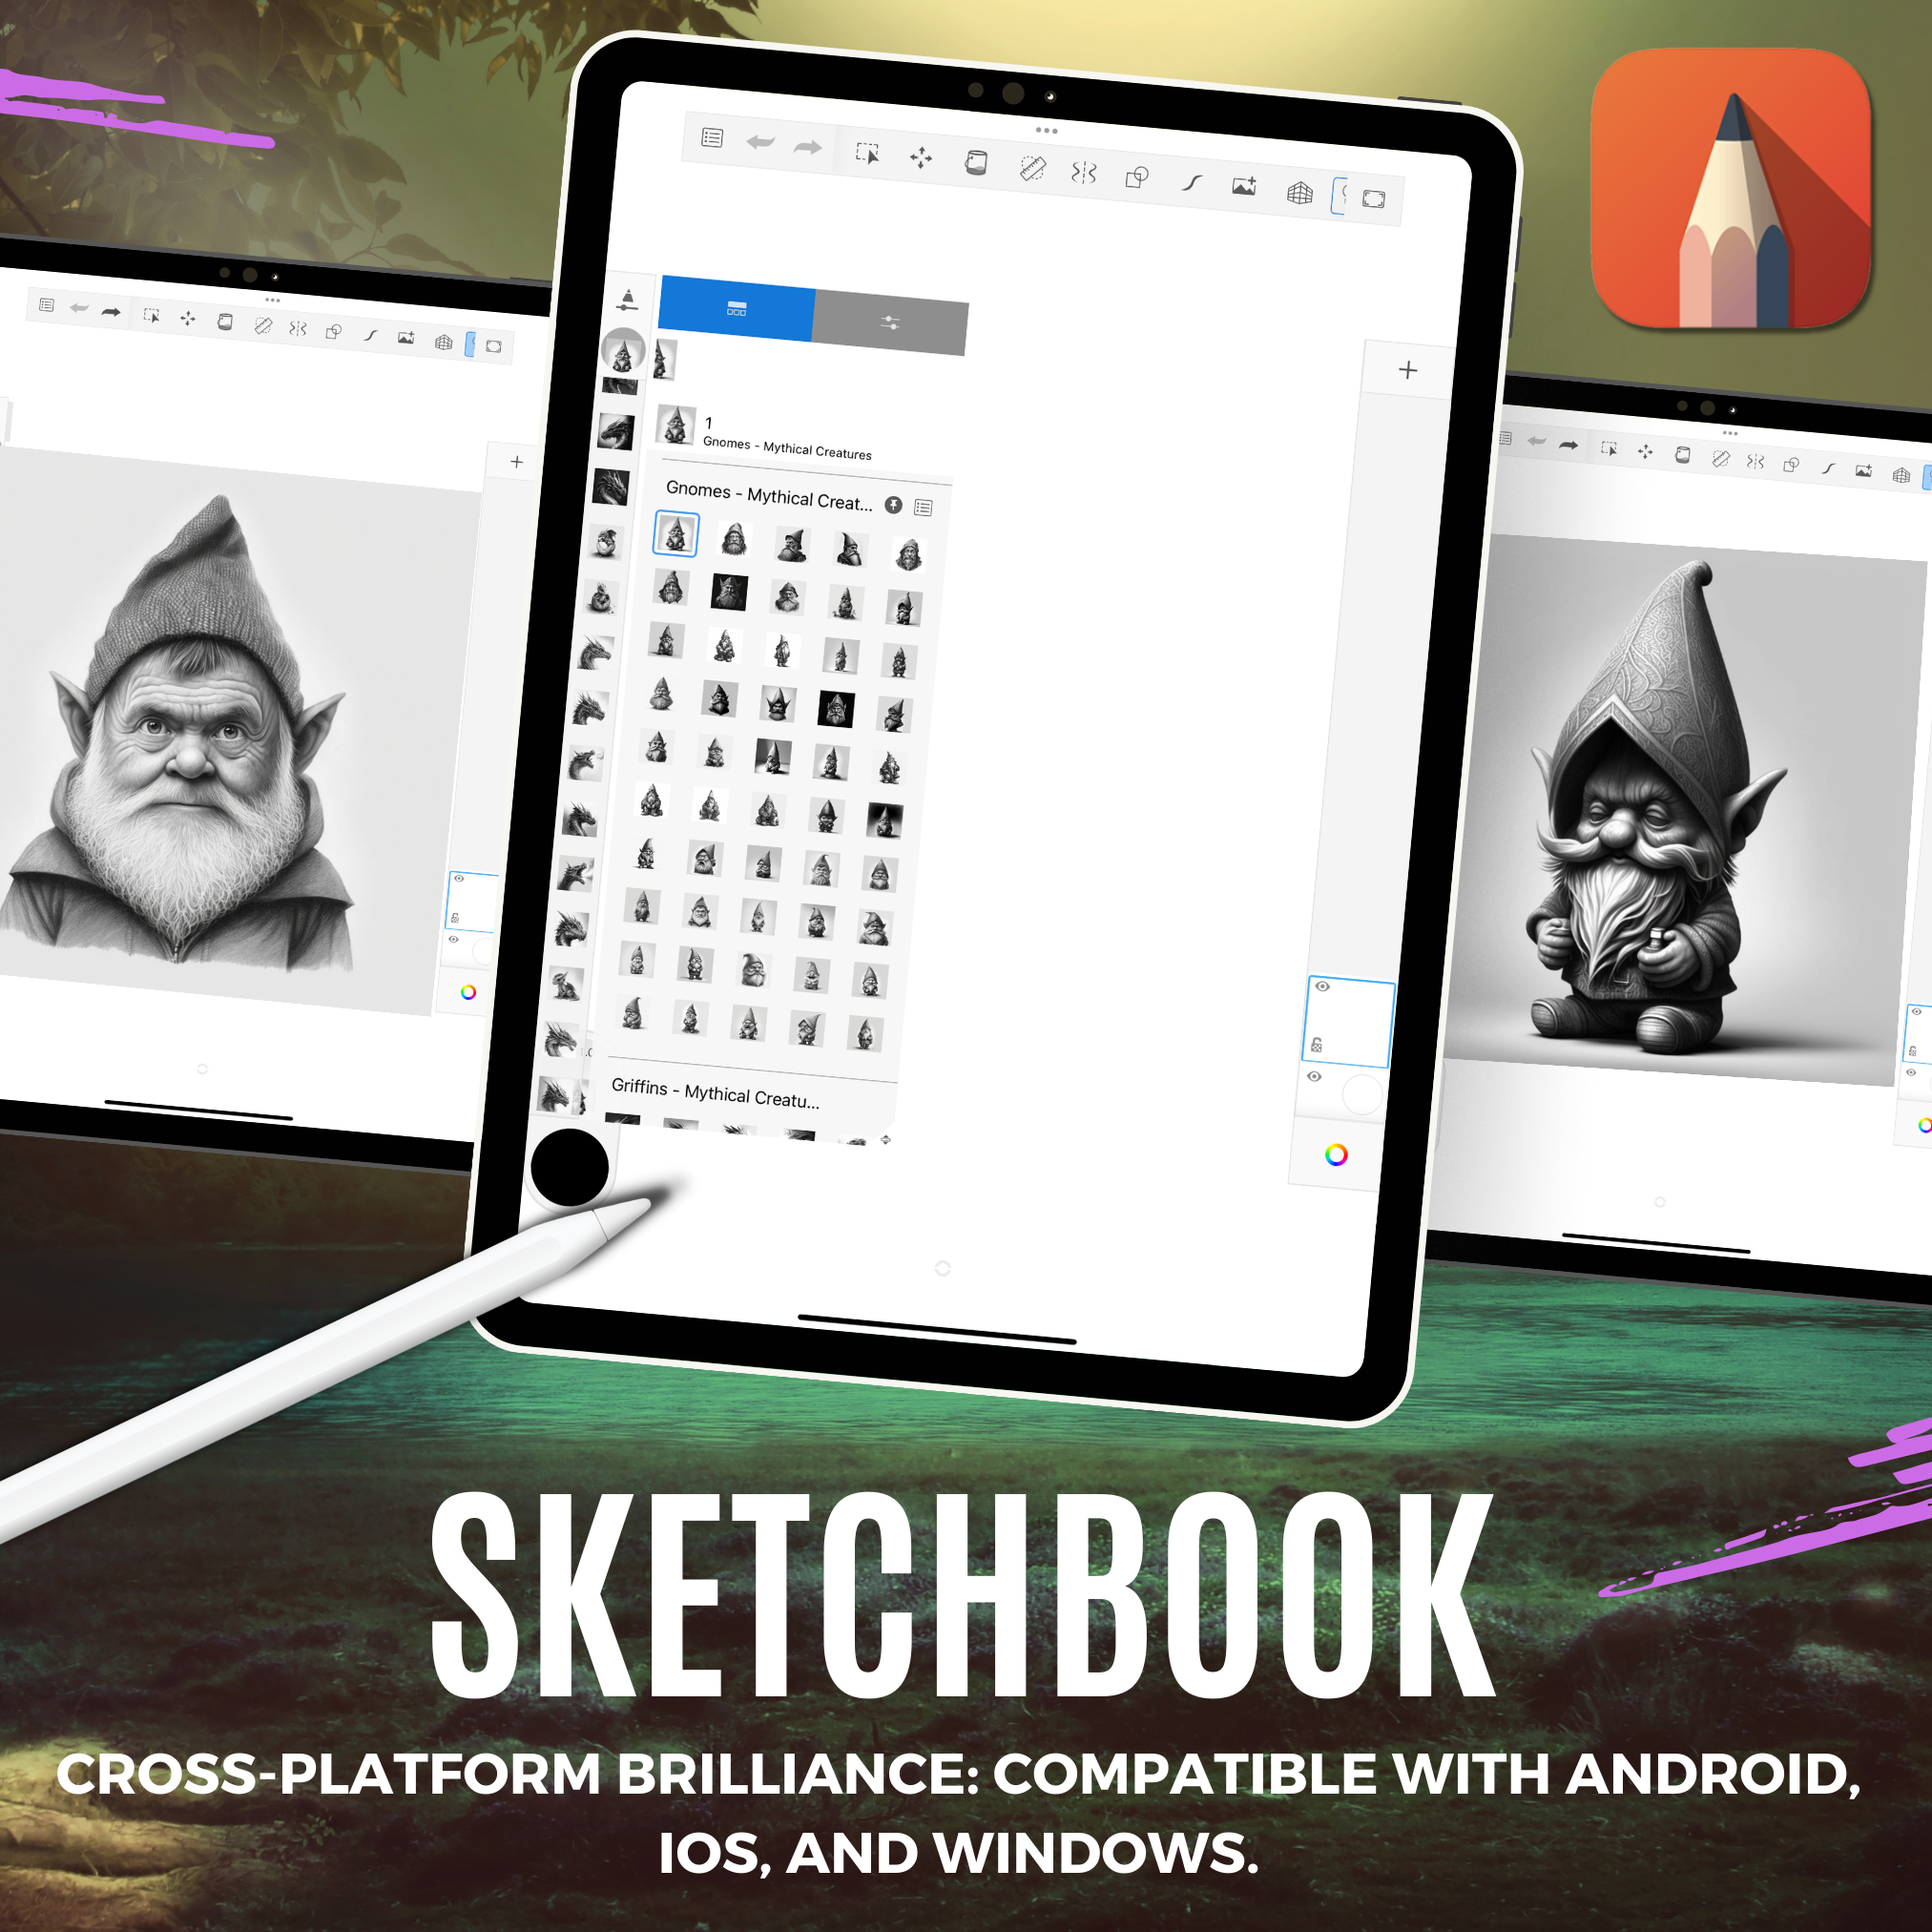 Colección de diseño digital Gnomes: 50 imágenes de Procreate y Sketchbook